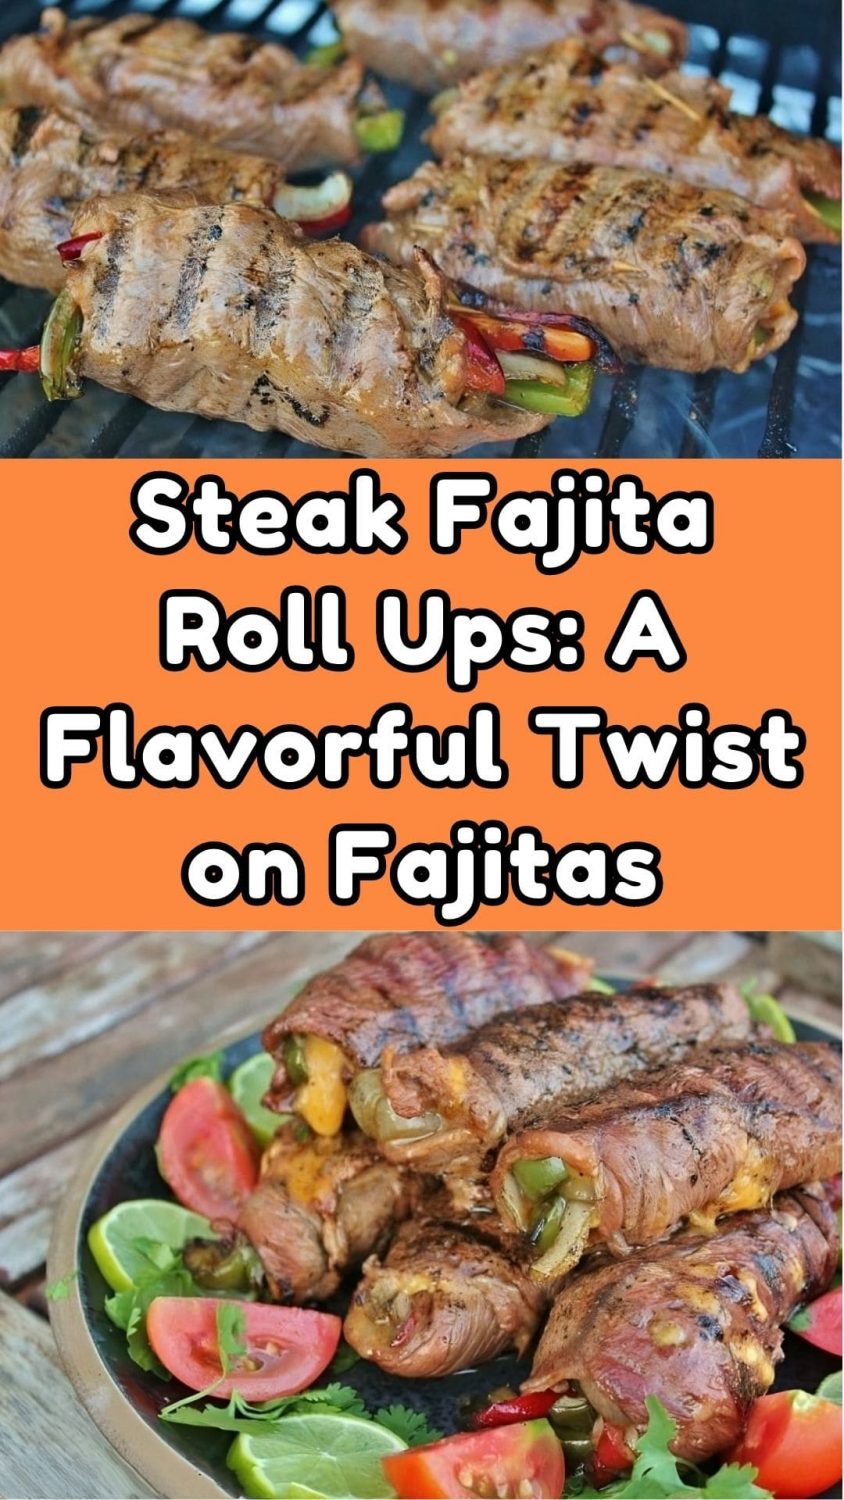 Steak Fajita Roll Ups: A Flavorful Twist on Fajitas